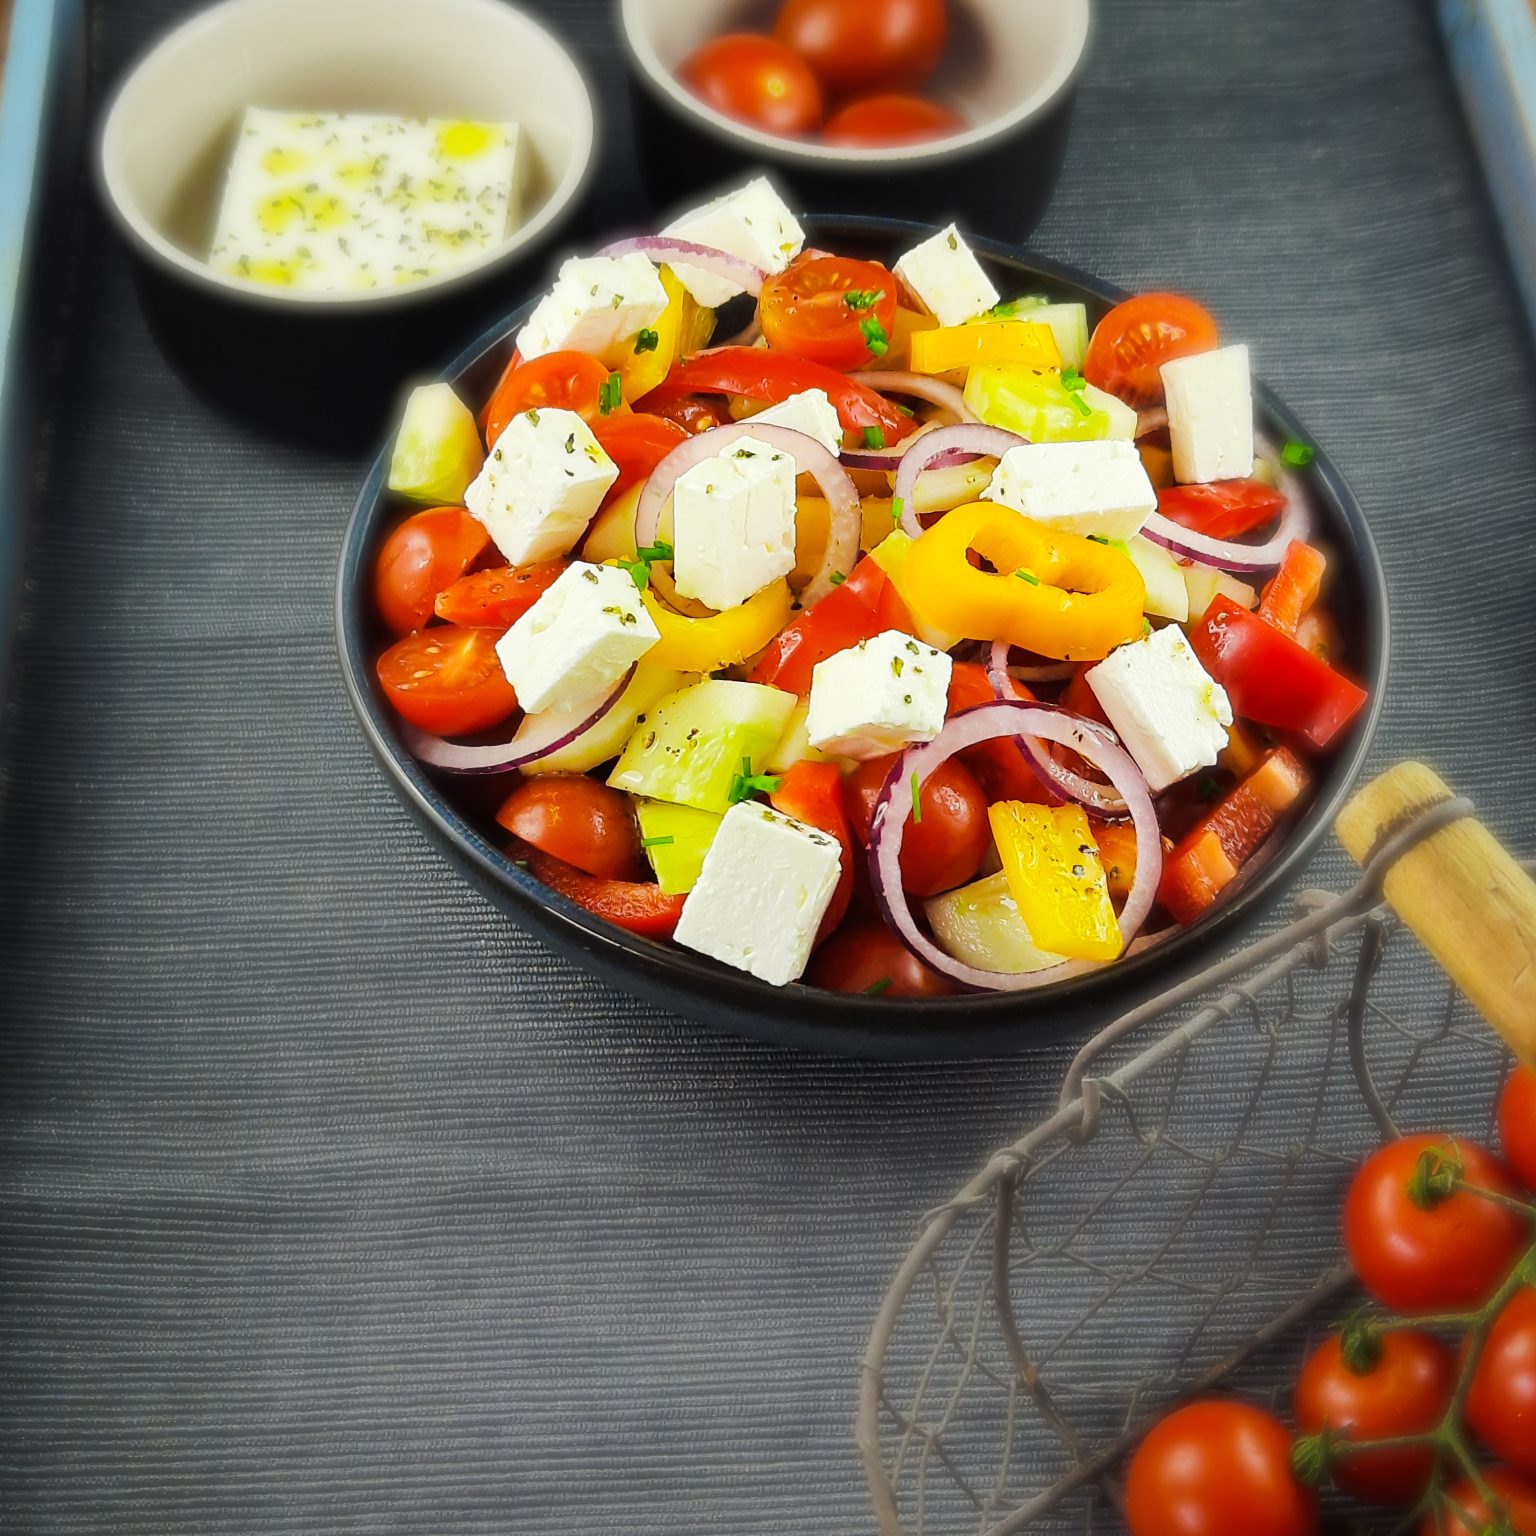 Griechischer Bauernsalat mit Feta ist knackig und frisch